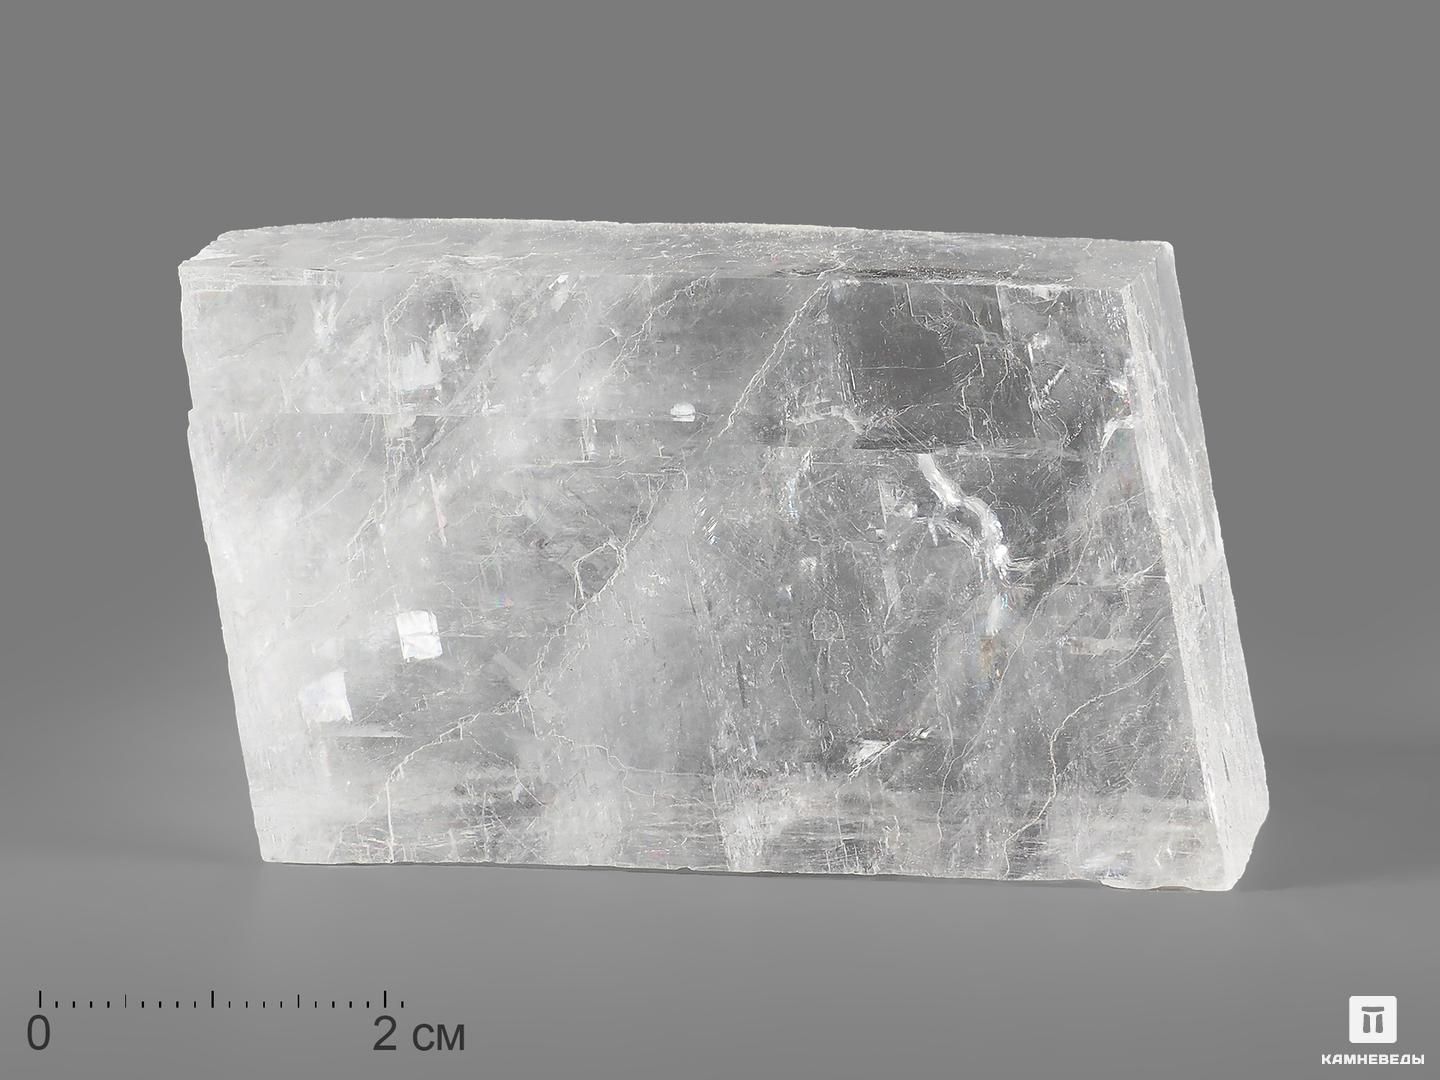 Исландский шпат (кальцит) 4-55 см (80-100 г) Камневеды купить за 680 руб вСтаром Осколе и характеристики - SKU13080545